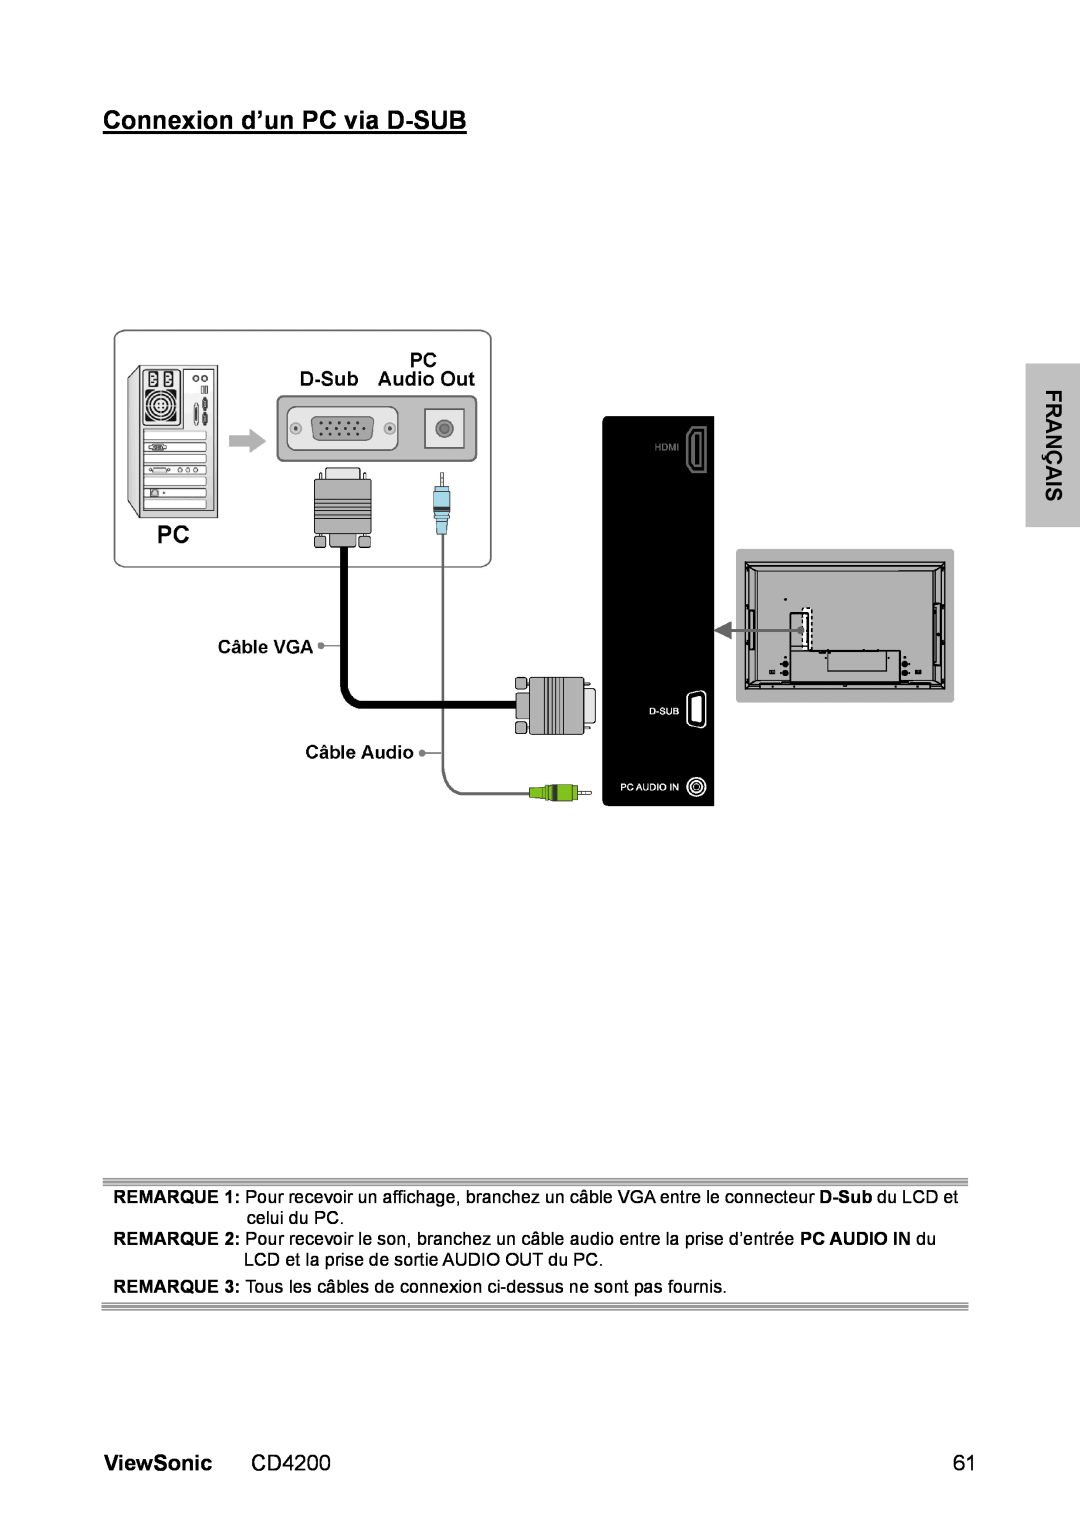 ViewSonic manual Connexion d’un PC via D-SUB, Français, ViewSonic CD4200 